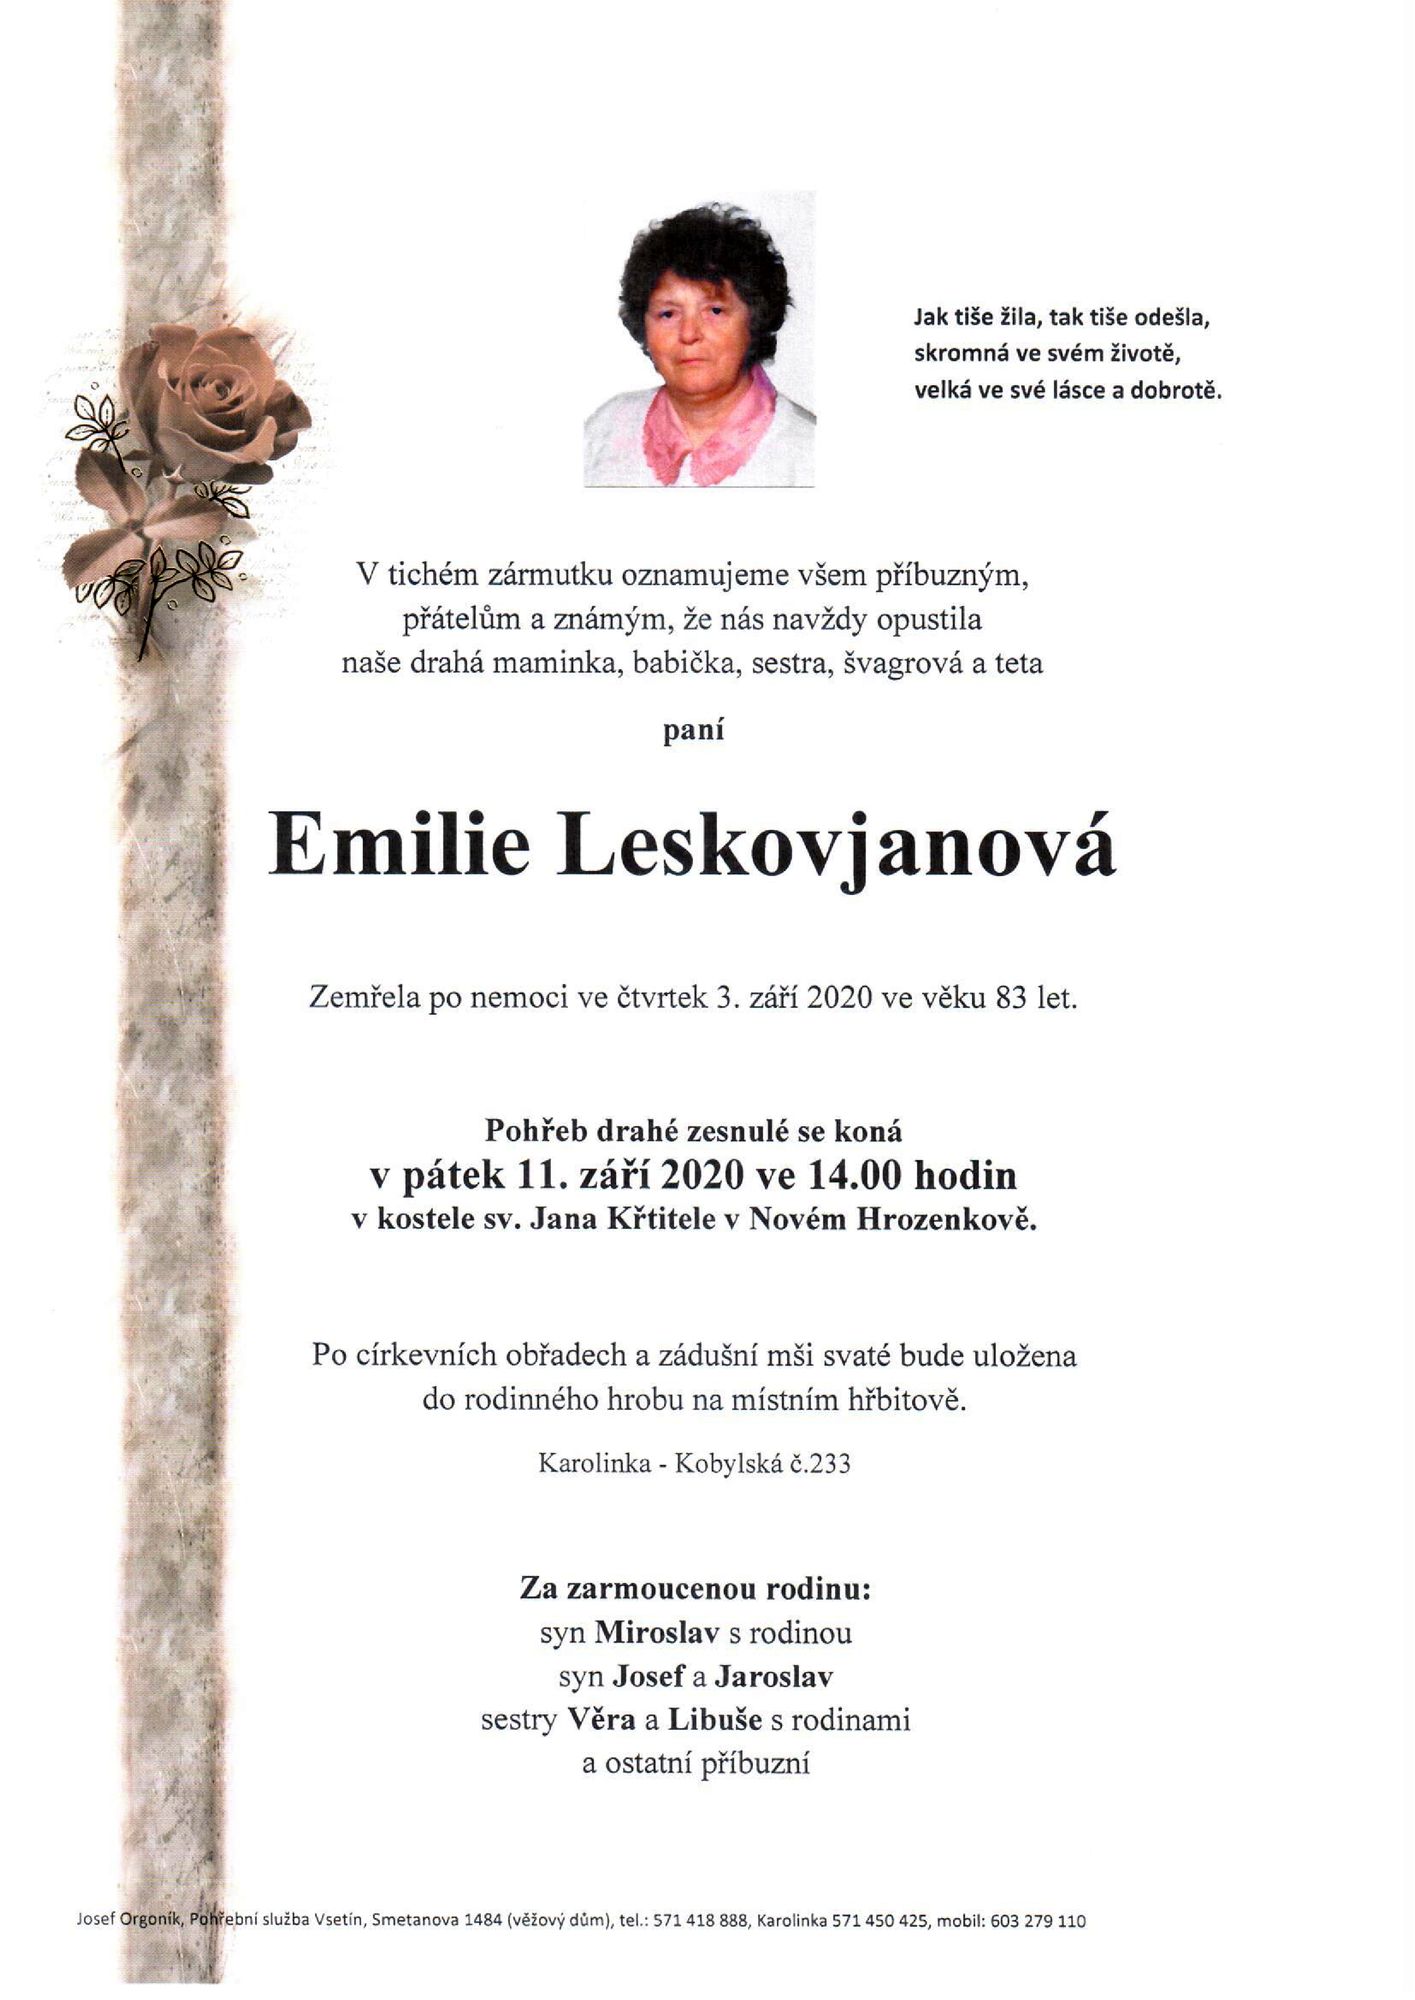 Emilie Leskovjanová